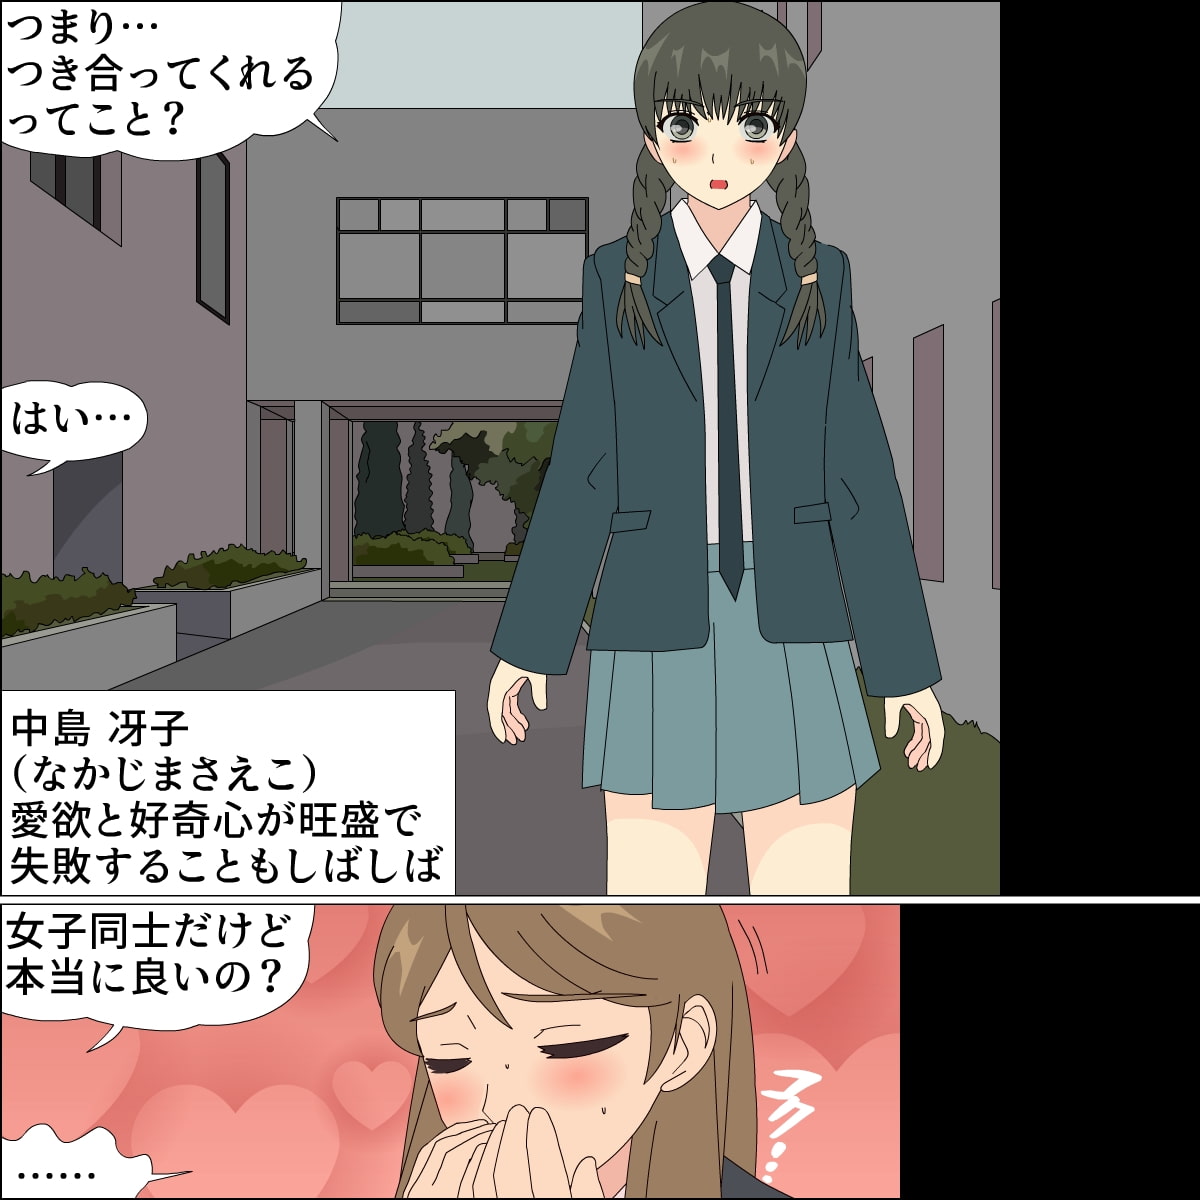 Lewd Love Lesson for a Docile Kohai: Saeko and Tomomi